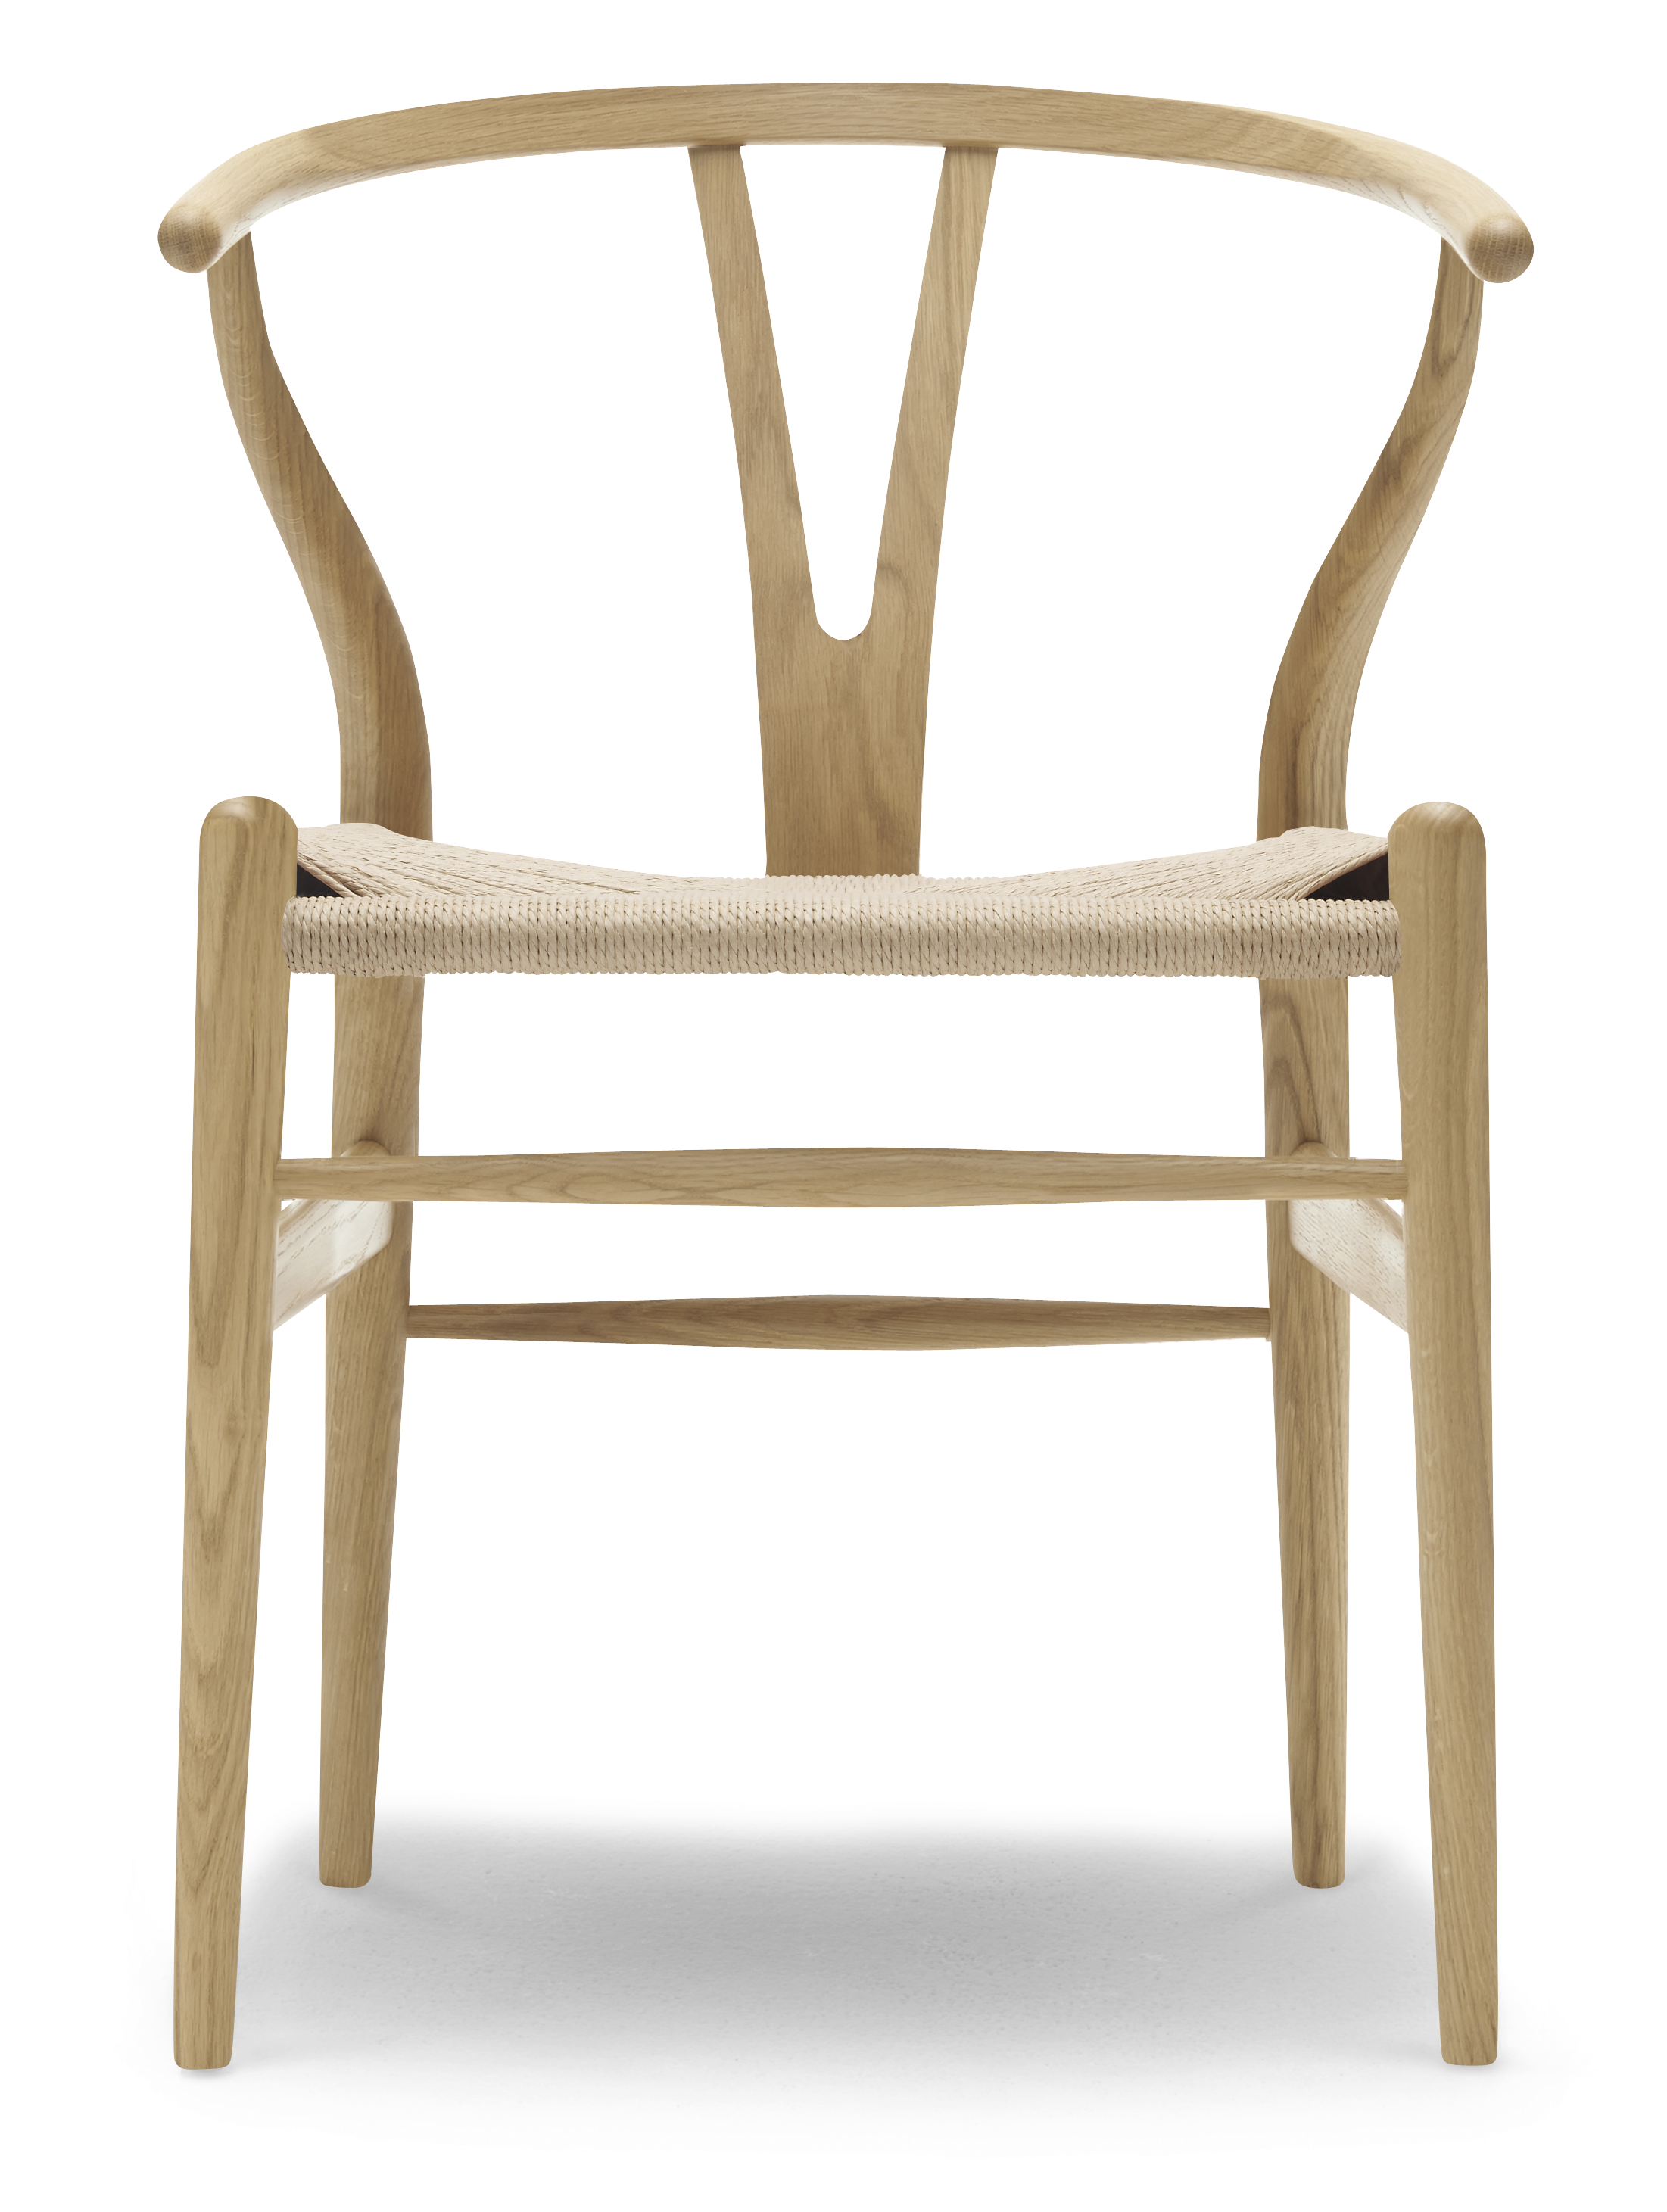 nuttet sweater Rejse Buy CH24 | Wishbone Chair designed by Hans J. Wegner | Carl Hansen & Søn